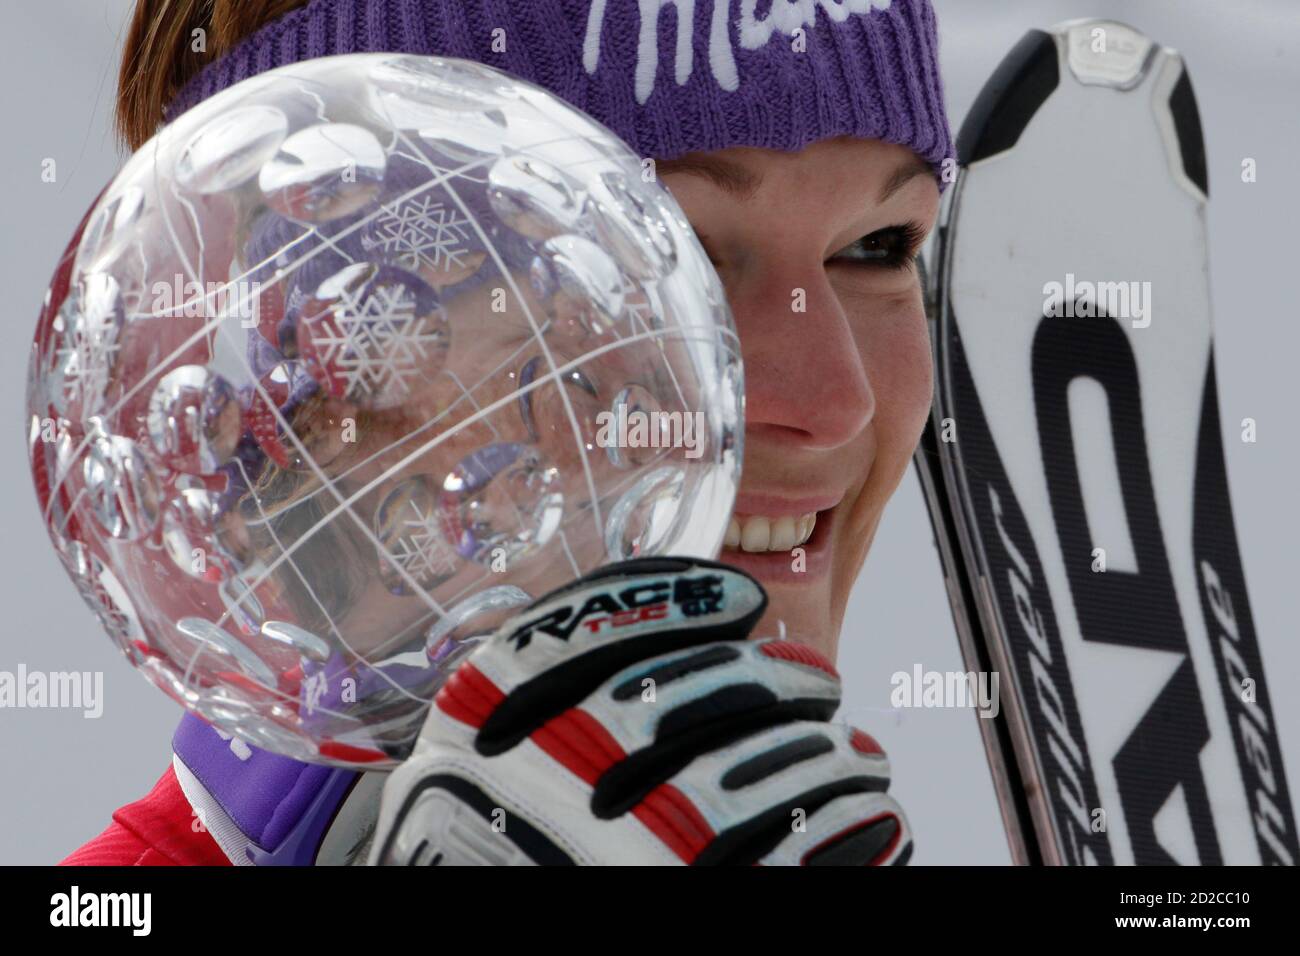 Maria Riesch, d'Allemagne, pose avec le trophée féminin de la coupe du monde de ski alpin de Slalom lors de la finale de la saison à Garmisch-Partenkirchen le 13 mars 2010. REUTERS/Wolfgang Rattay (SKI DE SPORT EN ALLEMAGNE) Banque D'Images